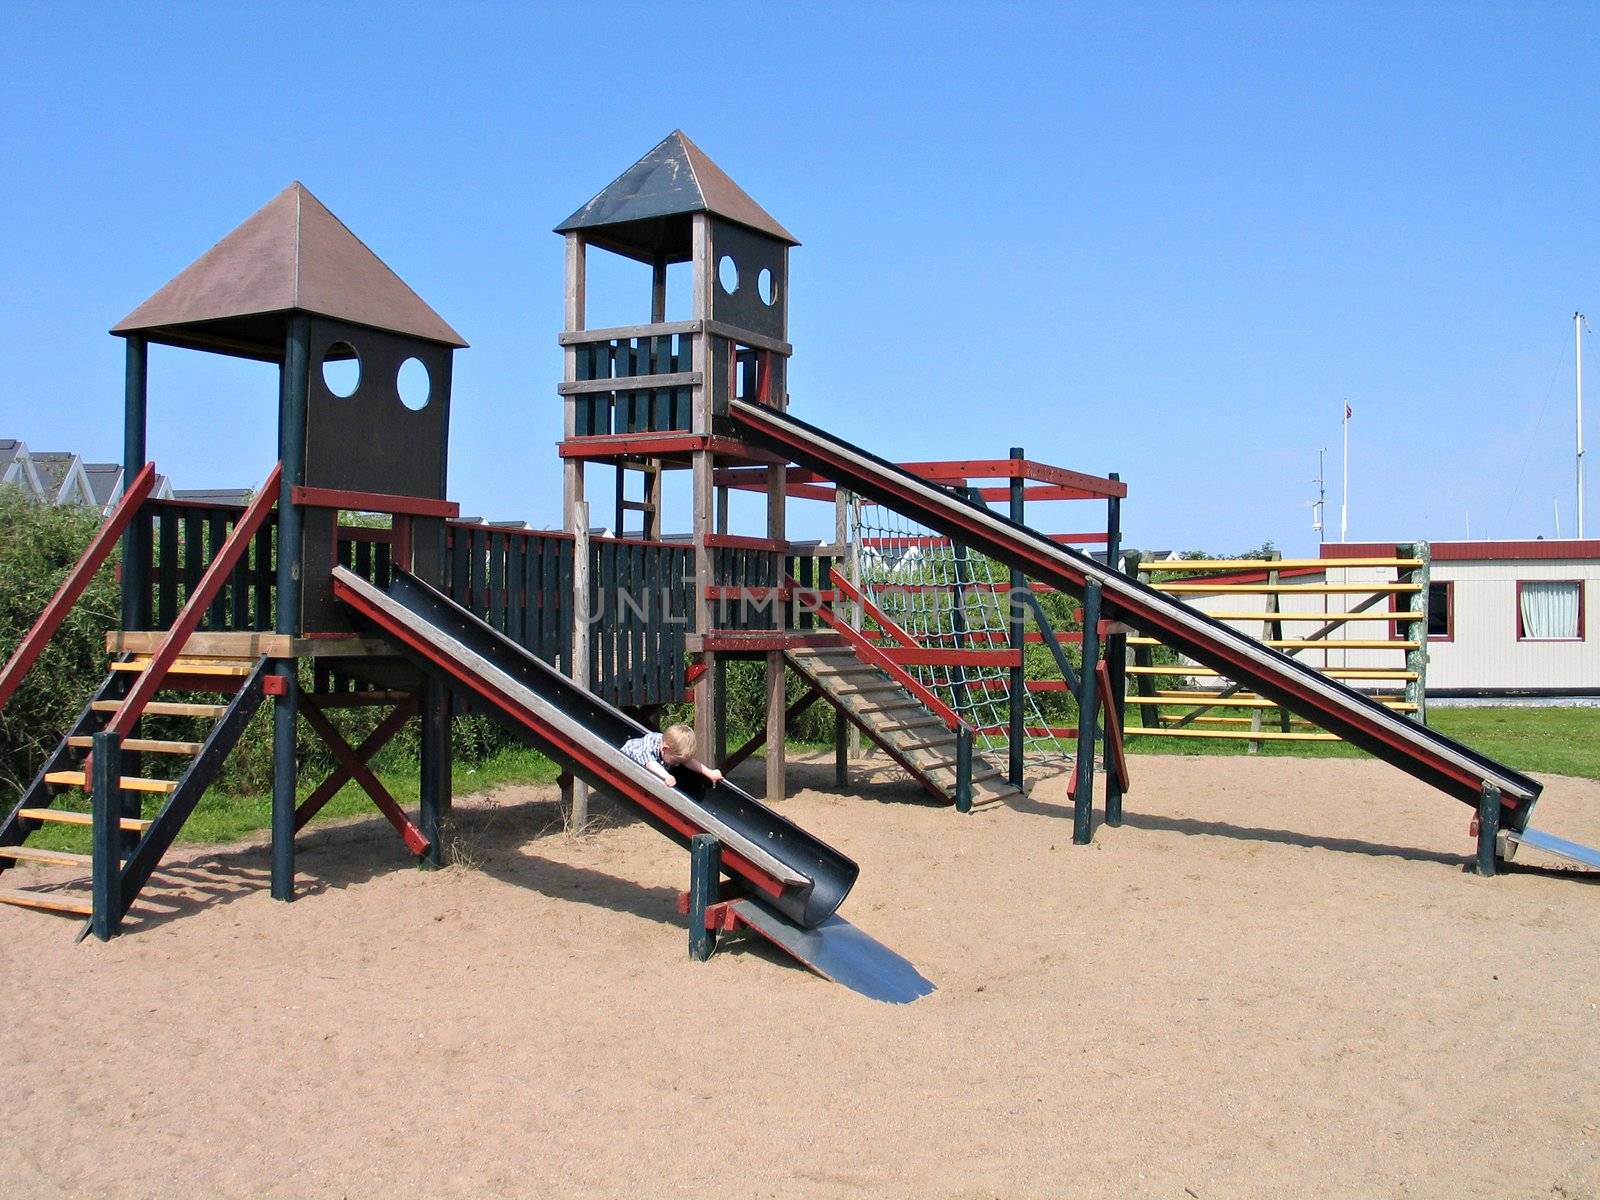 Child slides on a slider in a playground